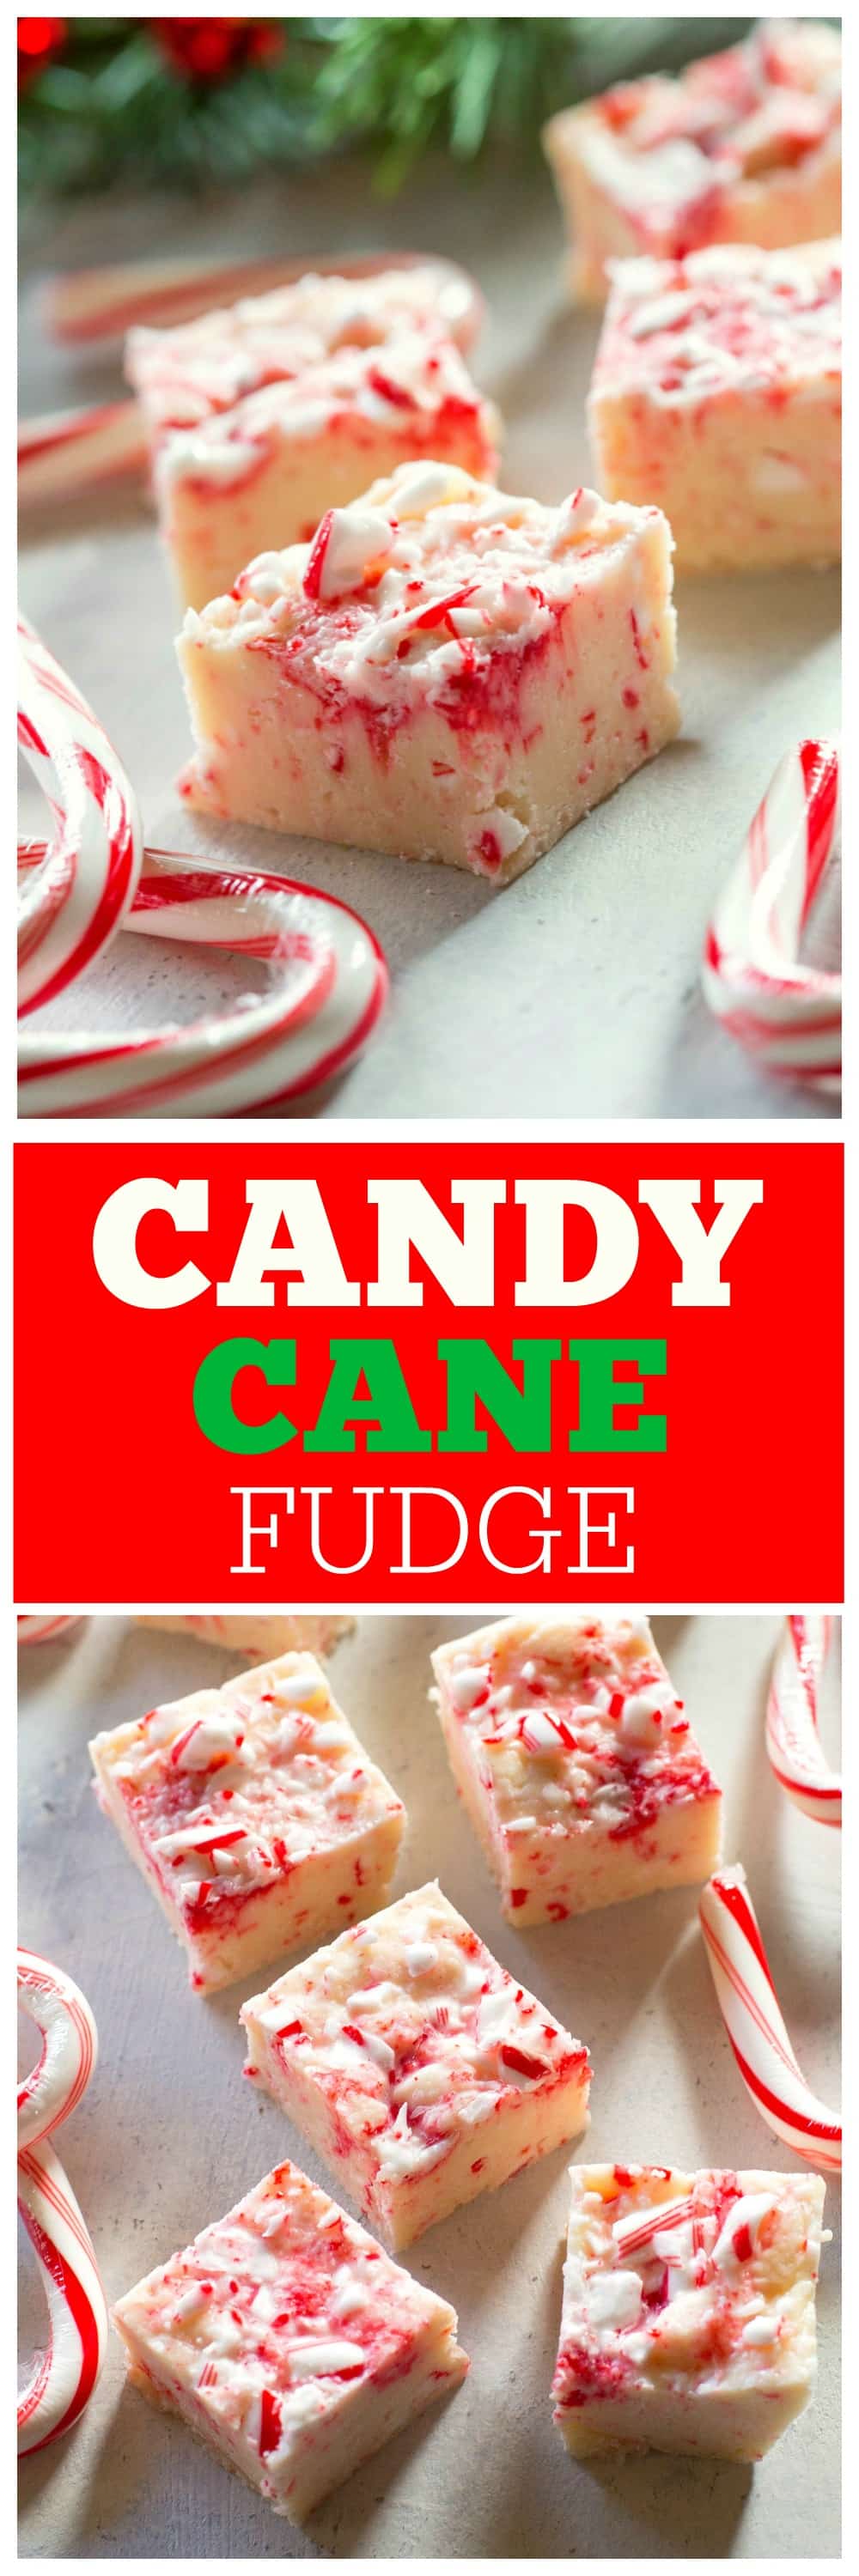 Candy Cane Fudge - seulement 5 ingrédients et tellement délicieux.  #bonbons #canne #fudge #noël #dessert